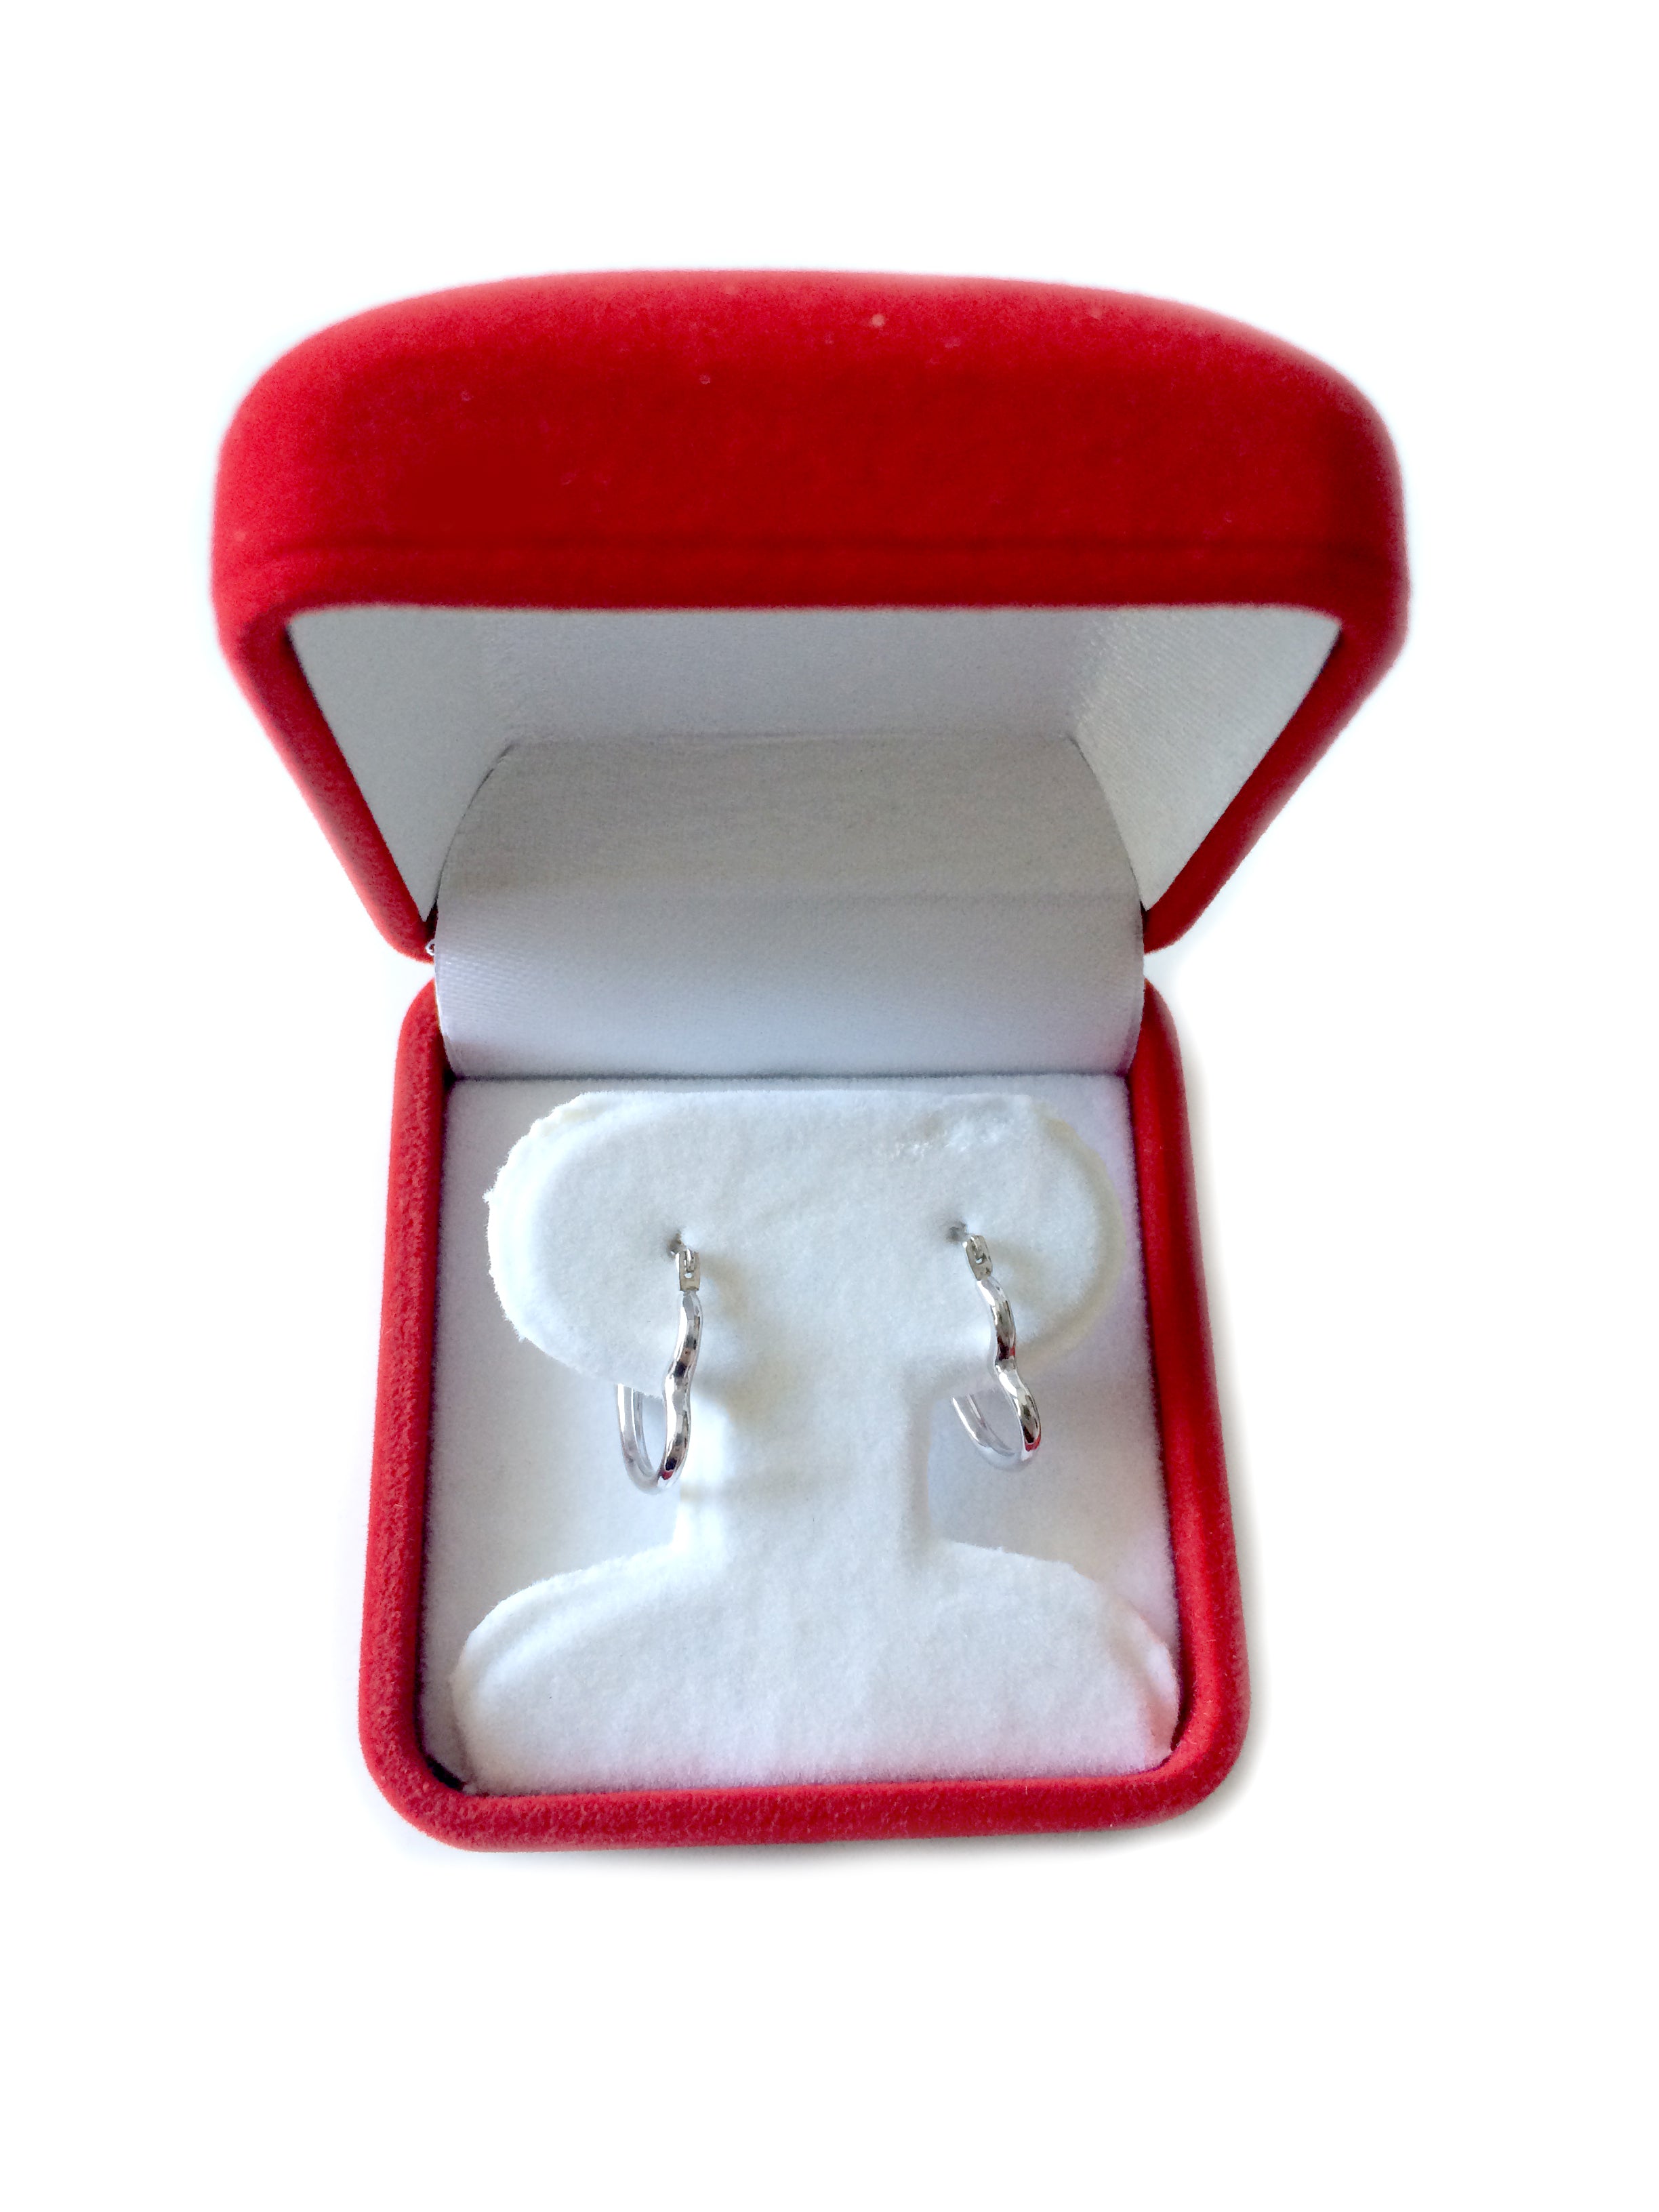 10 k hvidguld skinnende åben hjertering øreringe, diameter 15 mm fine designersmykker til mænd og kvinder